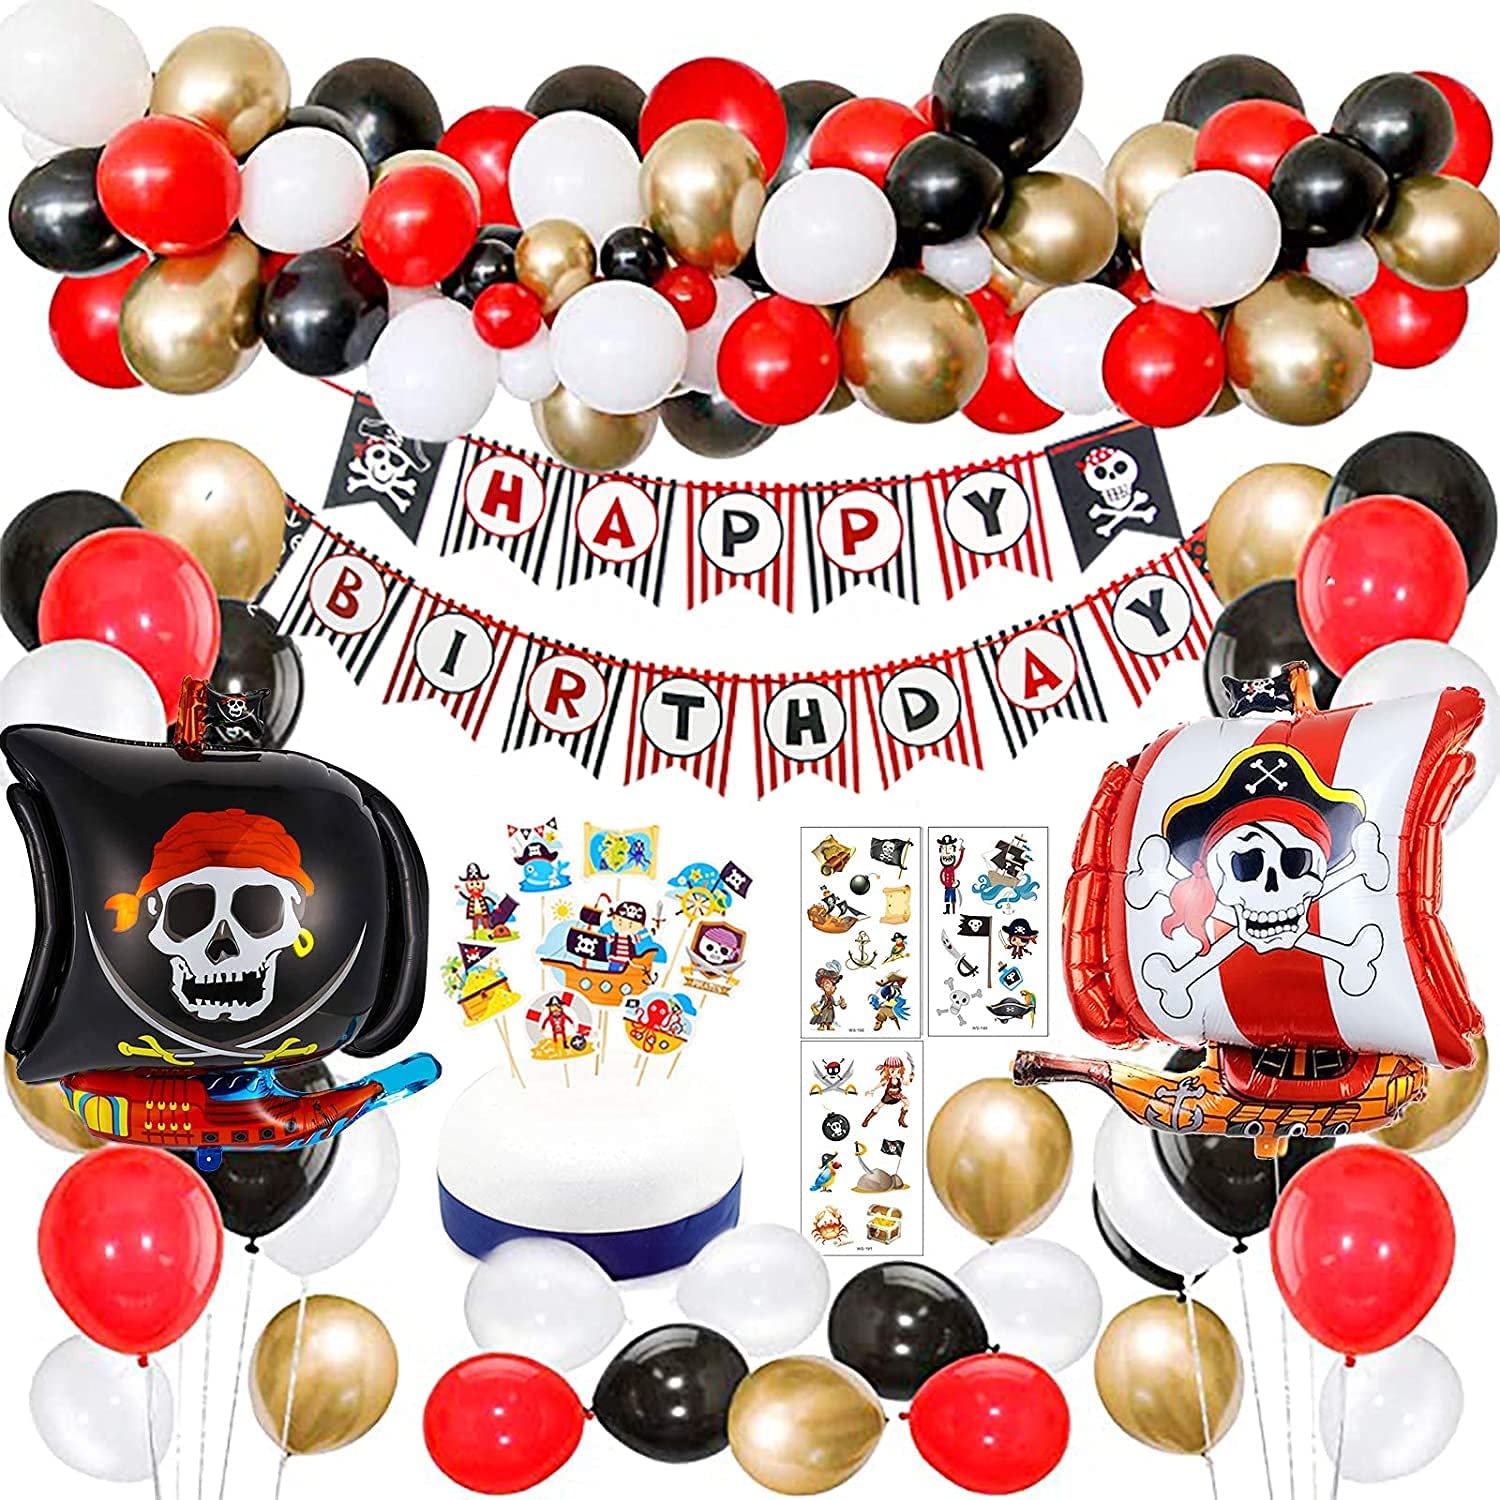 Kit de fête anniversaire pirate - Décoration anniversaire enfant